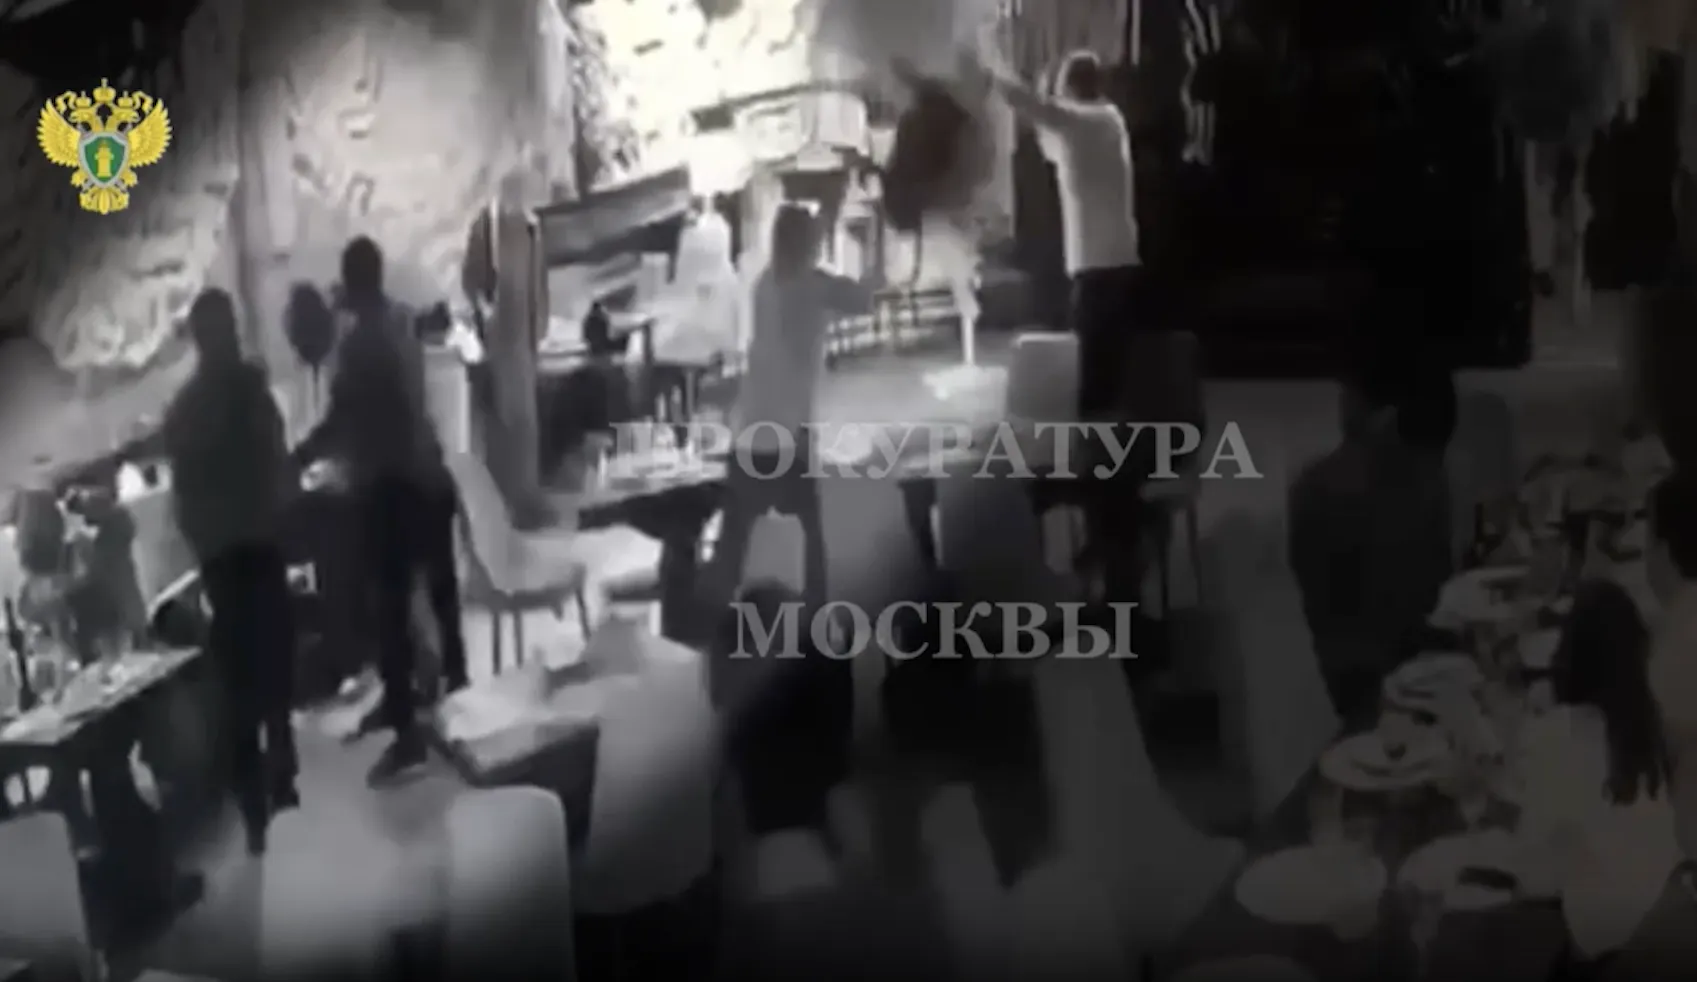 Массовая драка в московском ресторане закончилась смертью одного из участников